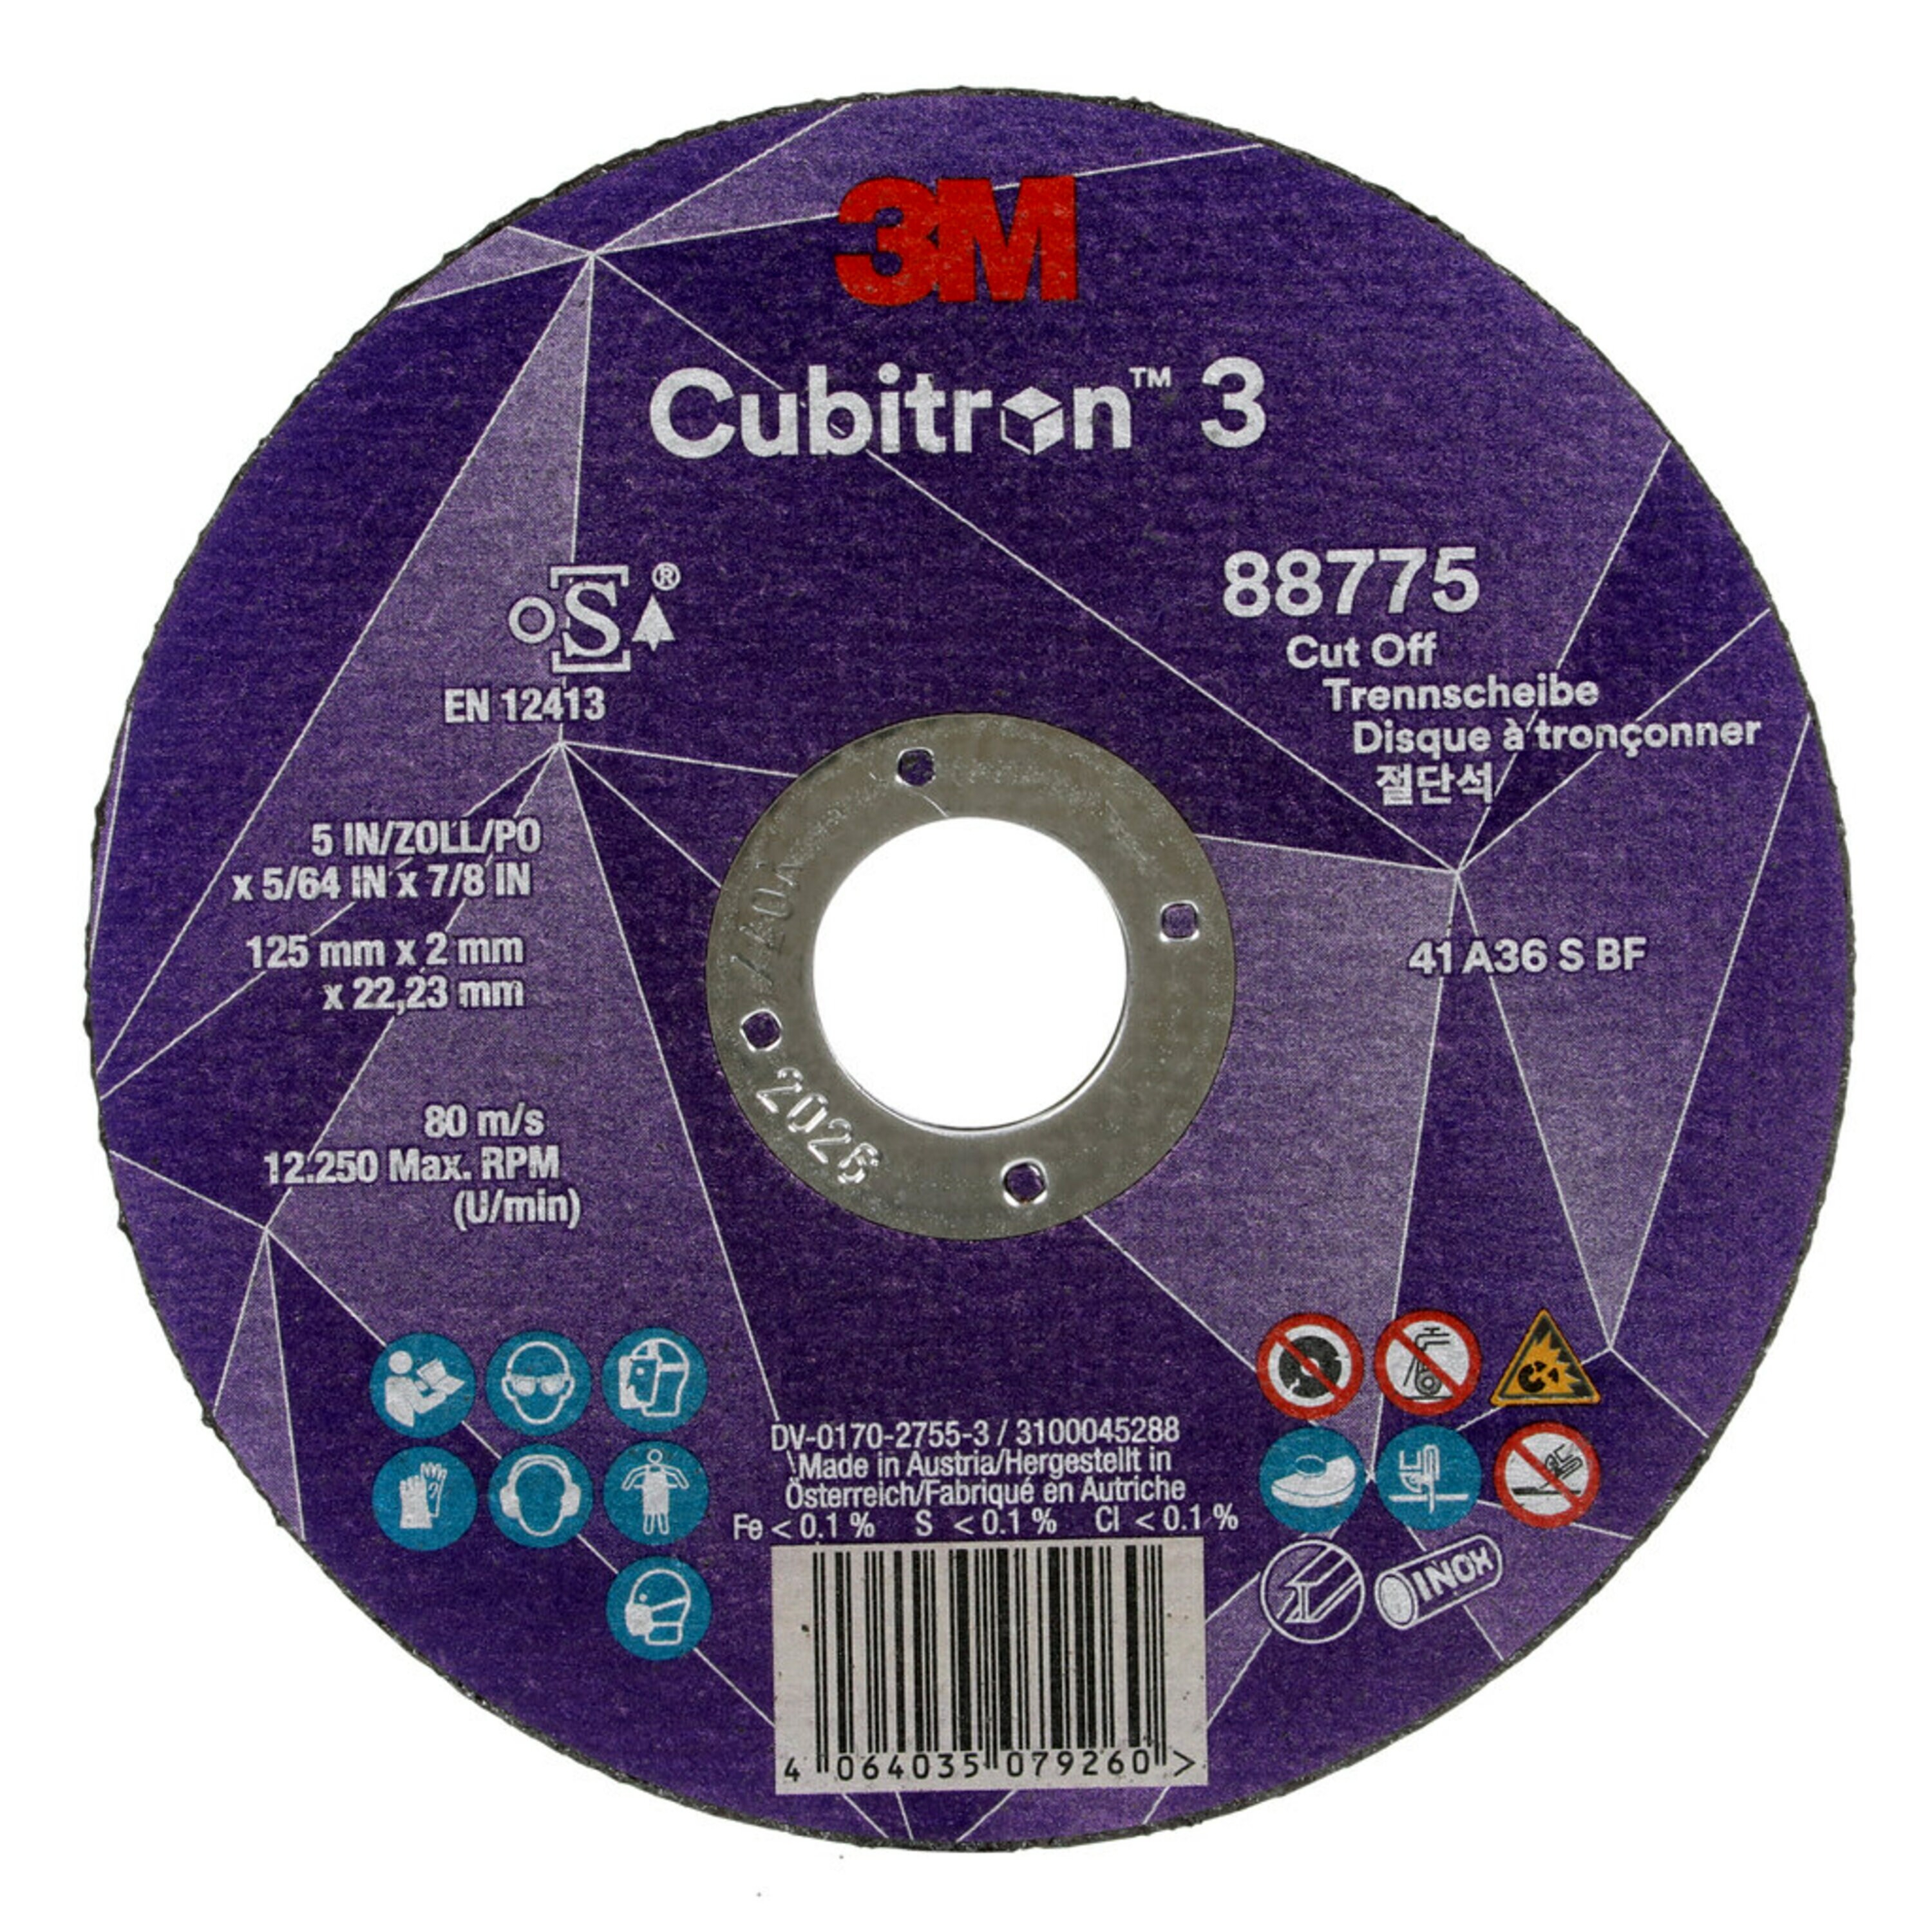 Disco de corte 3M Cubitron 3, 125 mm, 2 mm, 22,23 mm, 36 , tipo 41 #88775